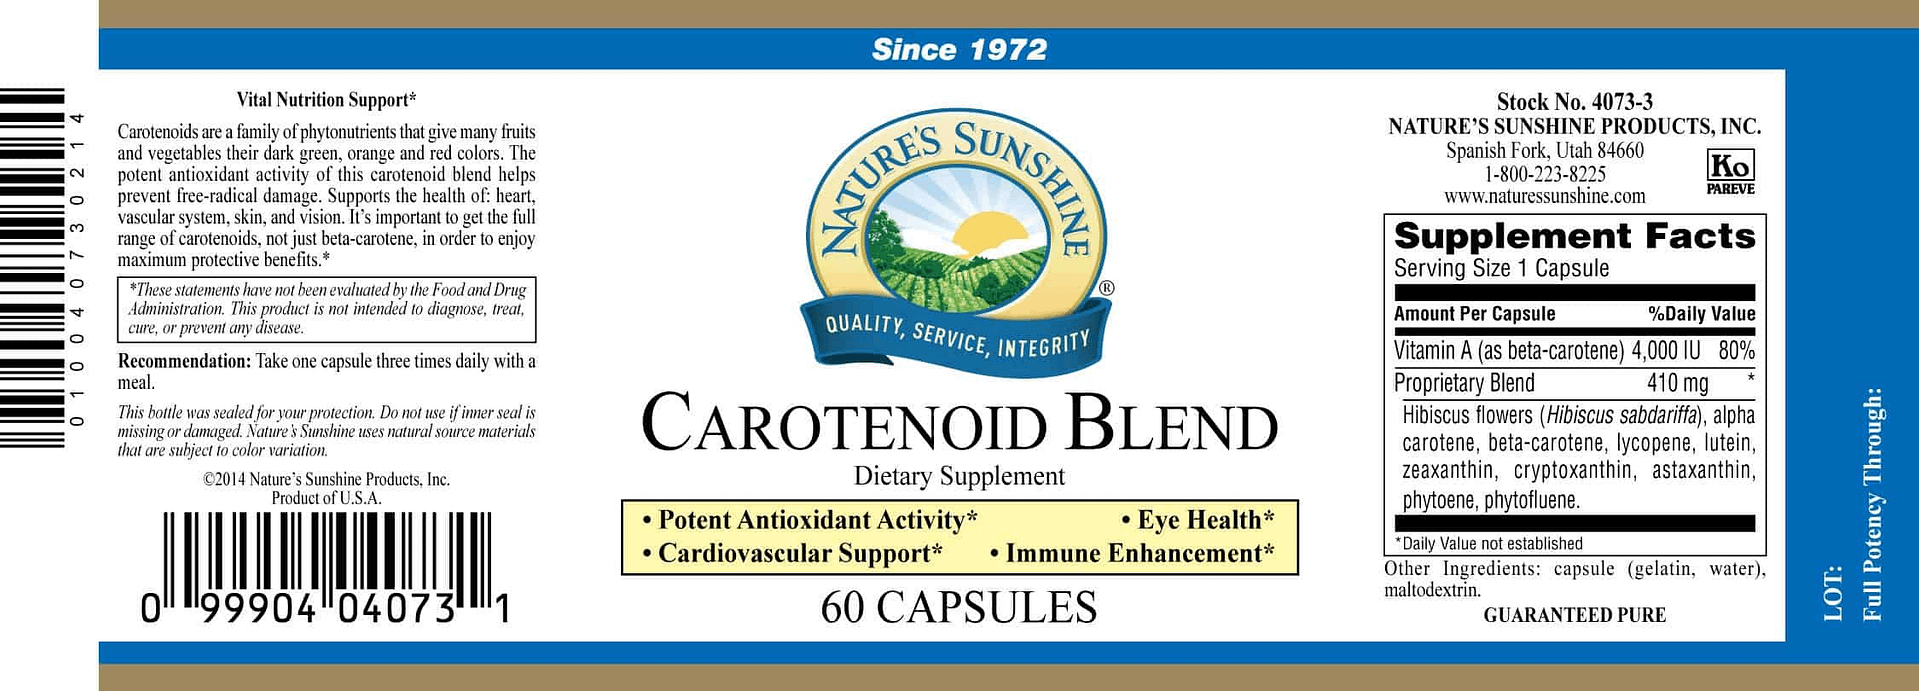 Carotenoid Blend